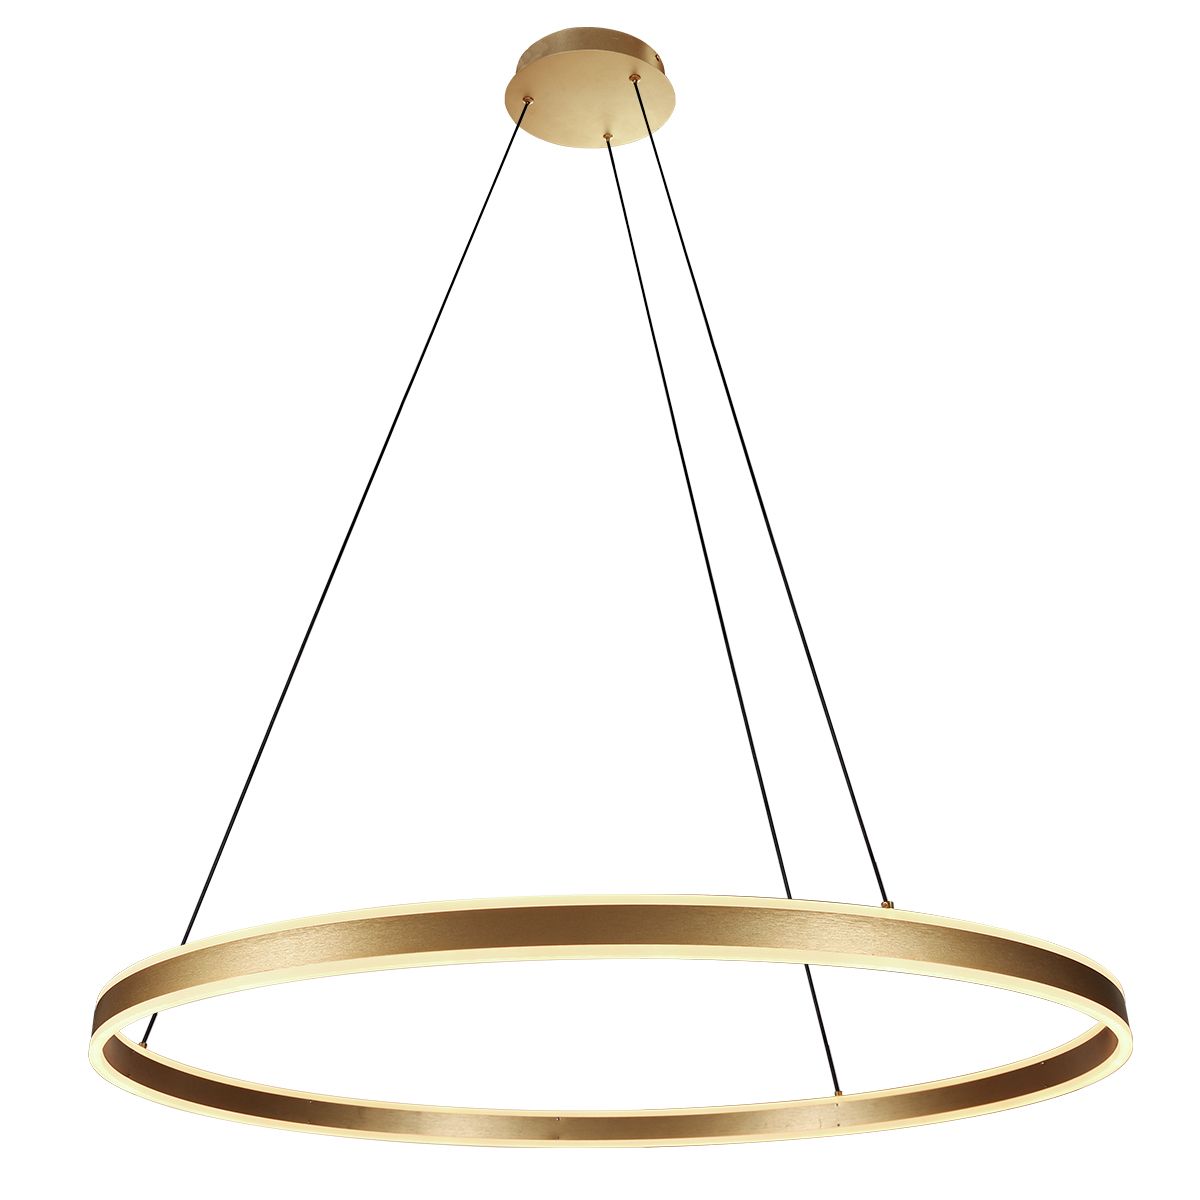 hanglamp-ringlux-3676go-goud-rond-100cm-7200-lumen-hanglamp-steinhauer-ringlux-goud-3676go